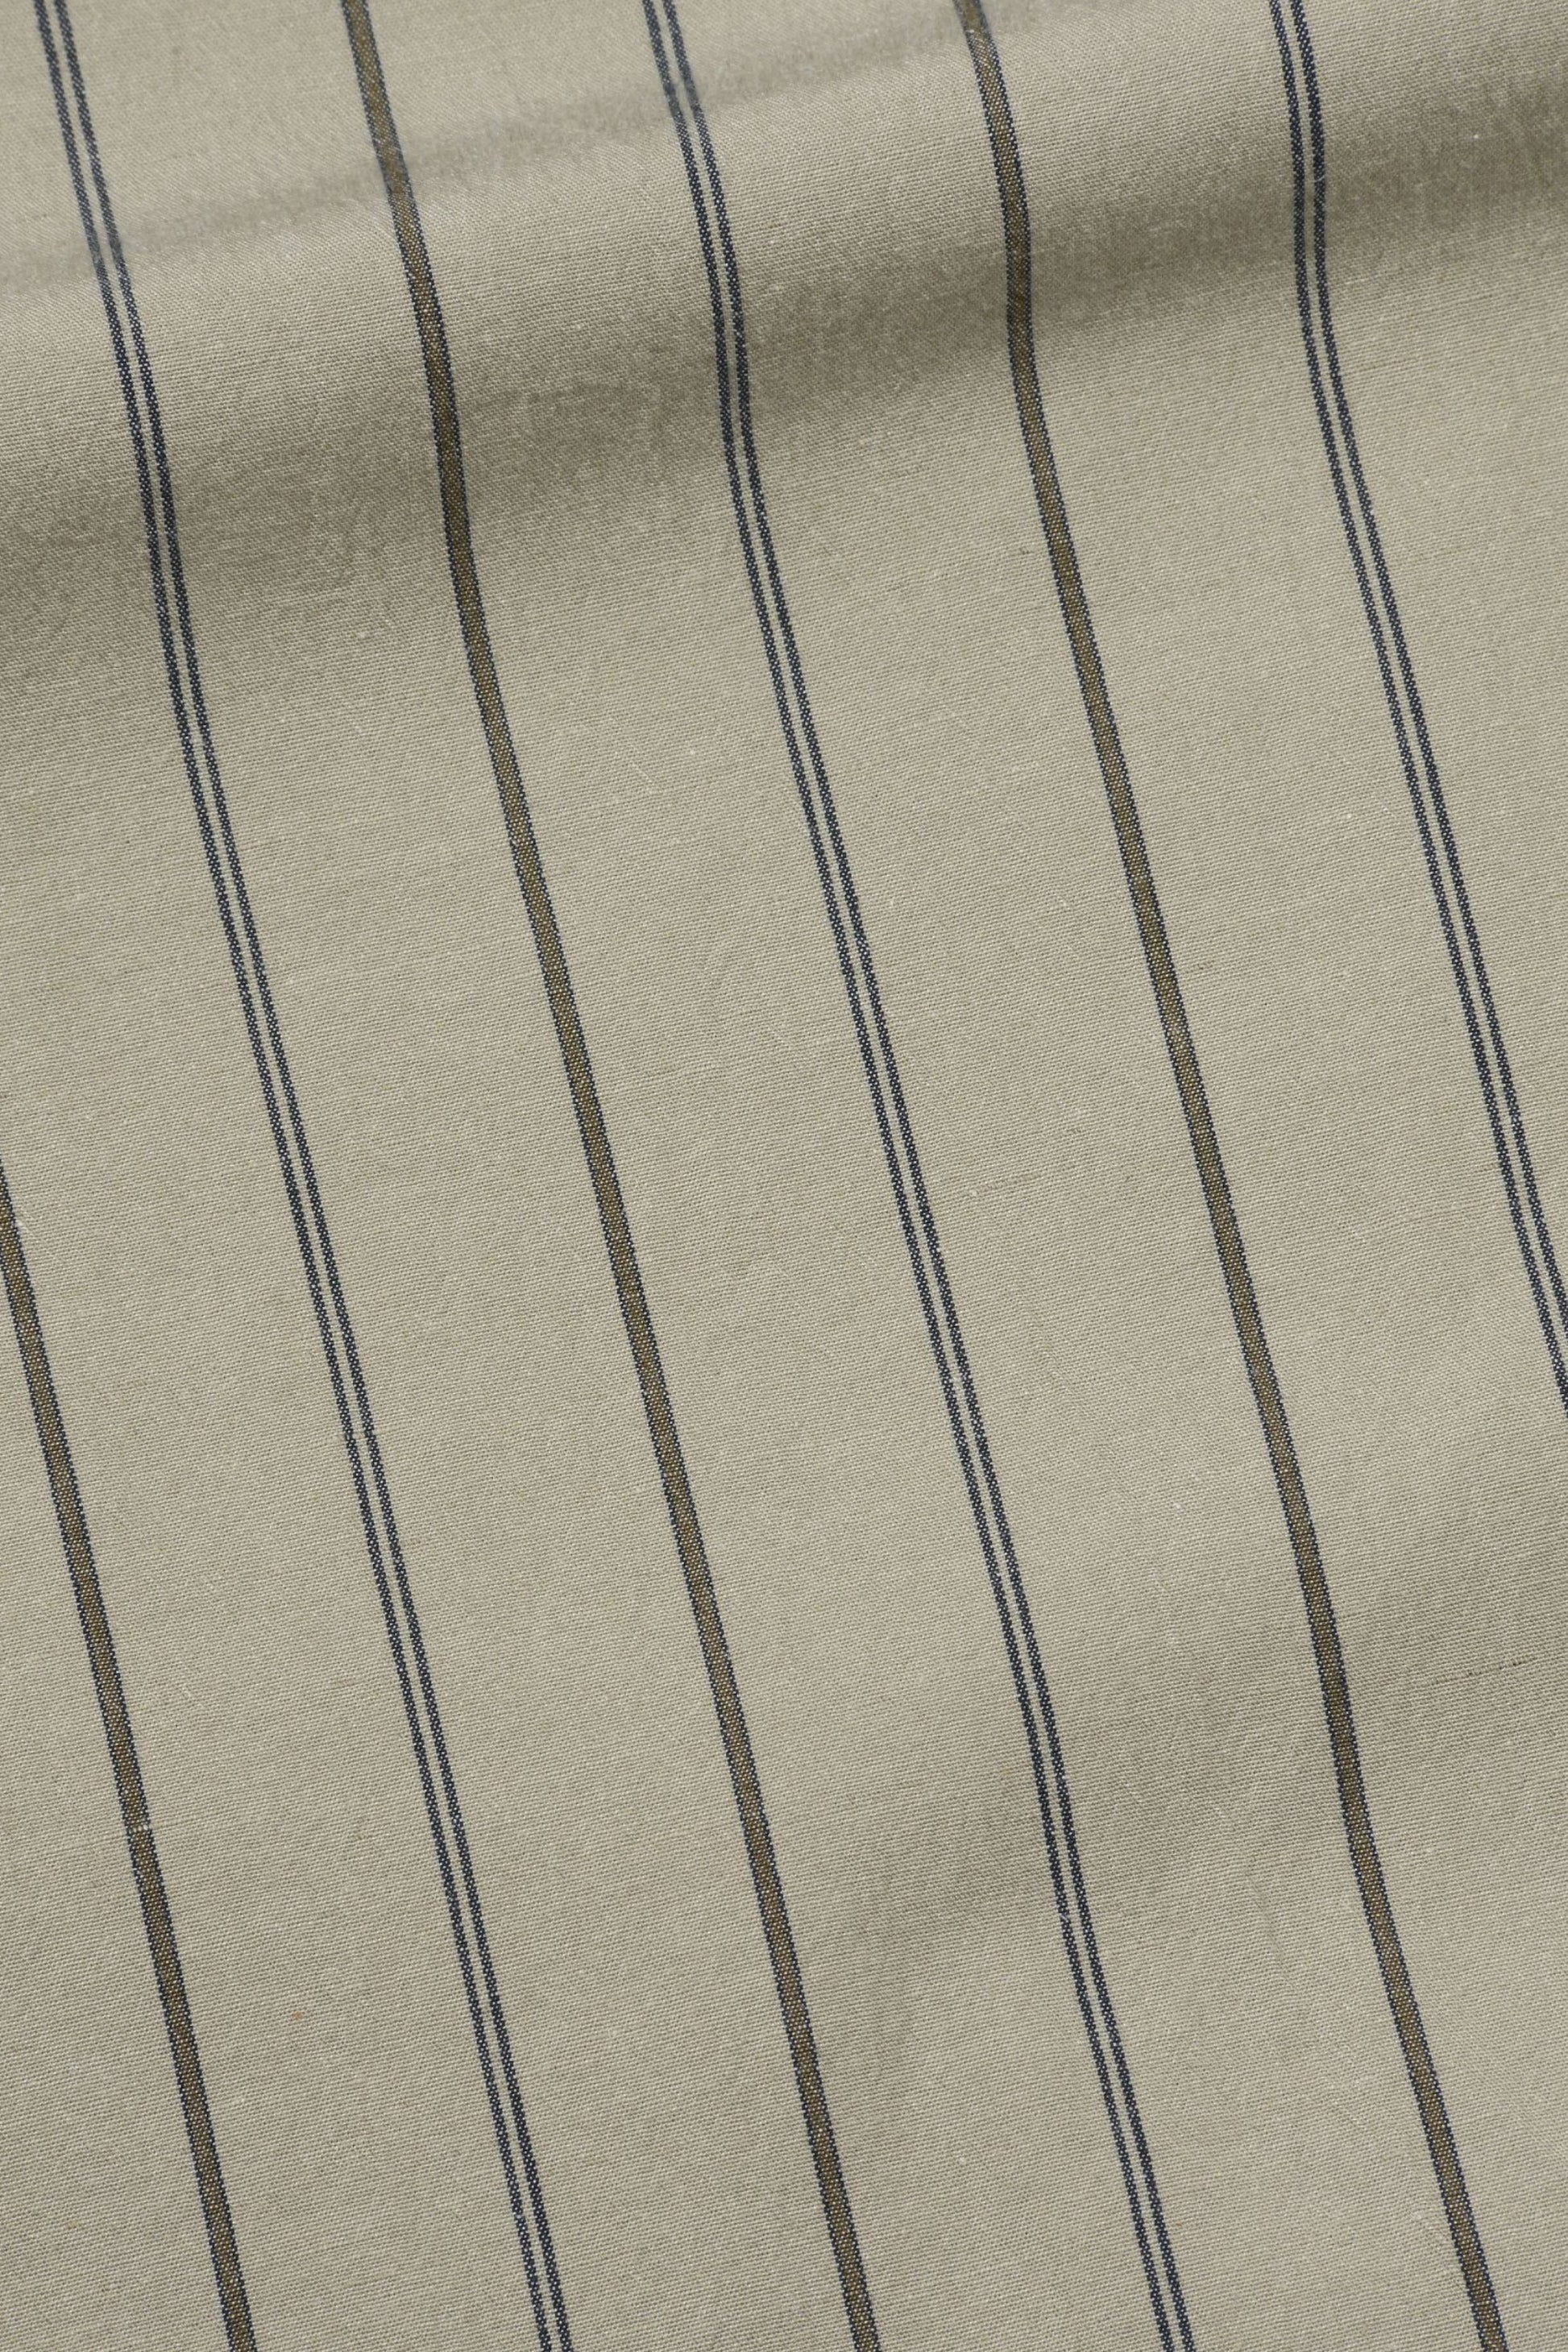 Margaret Howell - MHL. Overall Shirt Wide Stripe Cotton Linen (Stone / Navy / Bark)